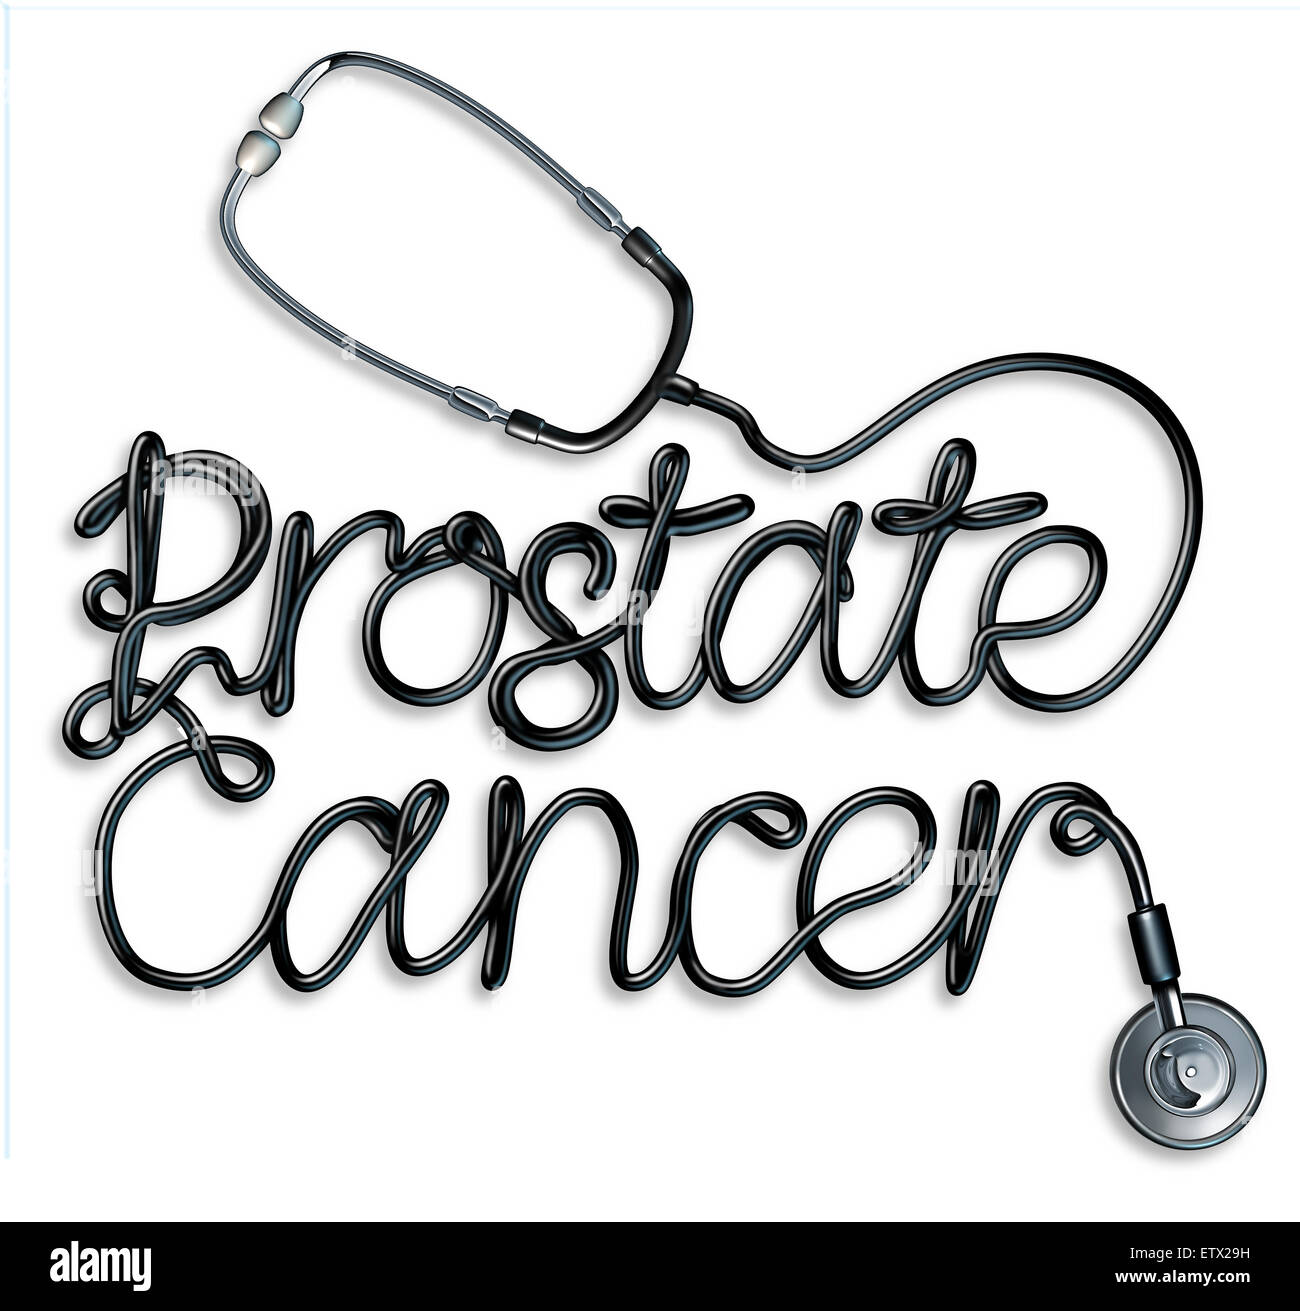 Il cancro della prostata di un concetto o di screening per il carcinoma nel premistoppa del sistema riproduttivo maschile come un medico stetoscopio conformata come un testo che descrive un cancro maligno malattia che colpisce gli uomini come loro età. Foto Stock